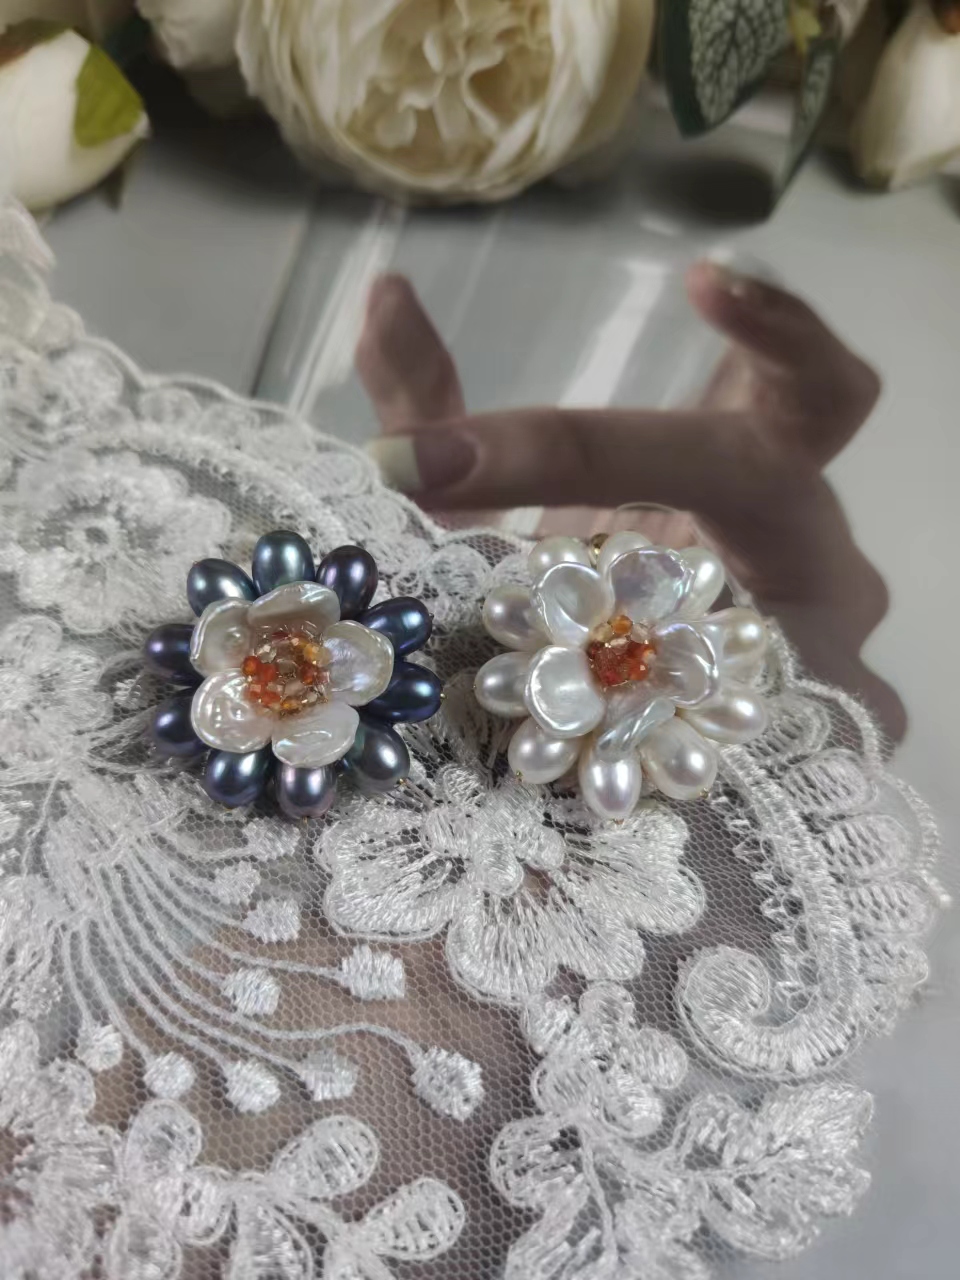 雪樱家原创设计巴洛克淡水珍珠手工制作时尚版胸针款式送好友礼物